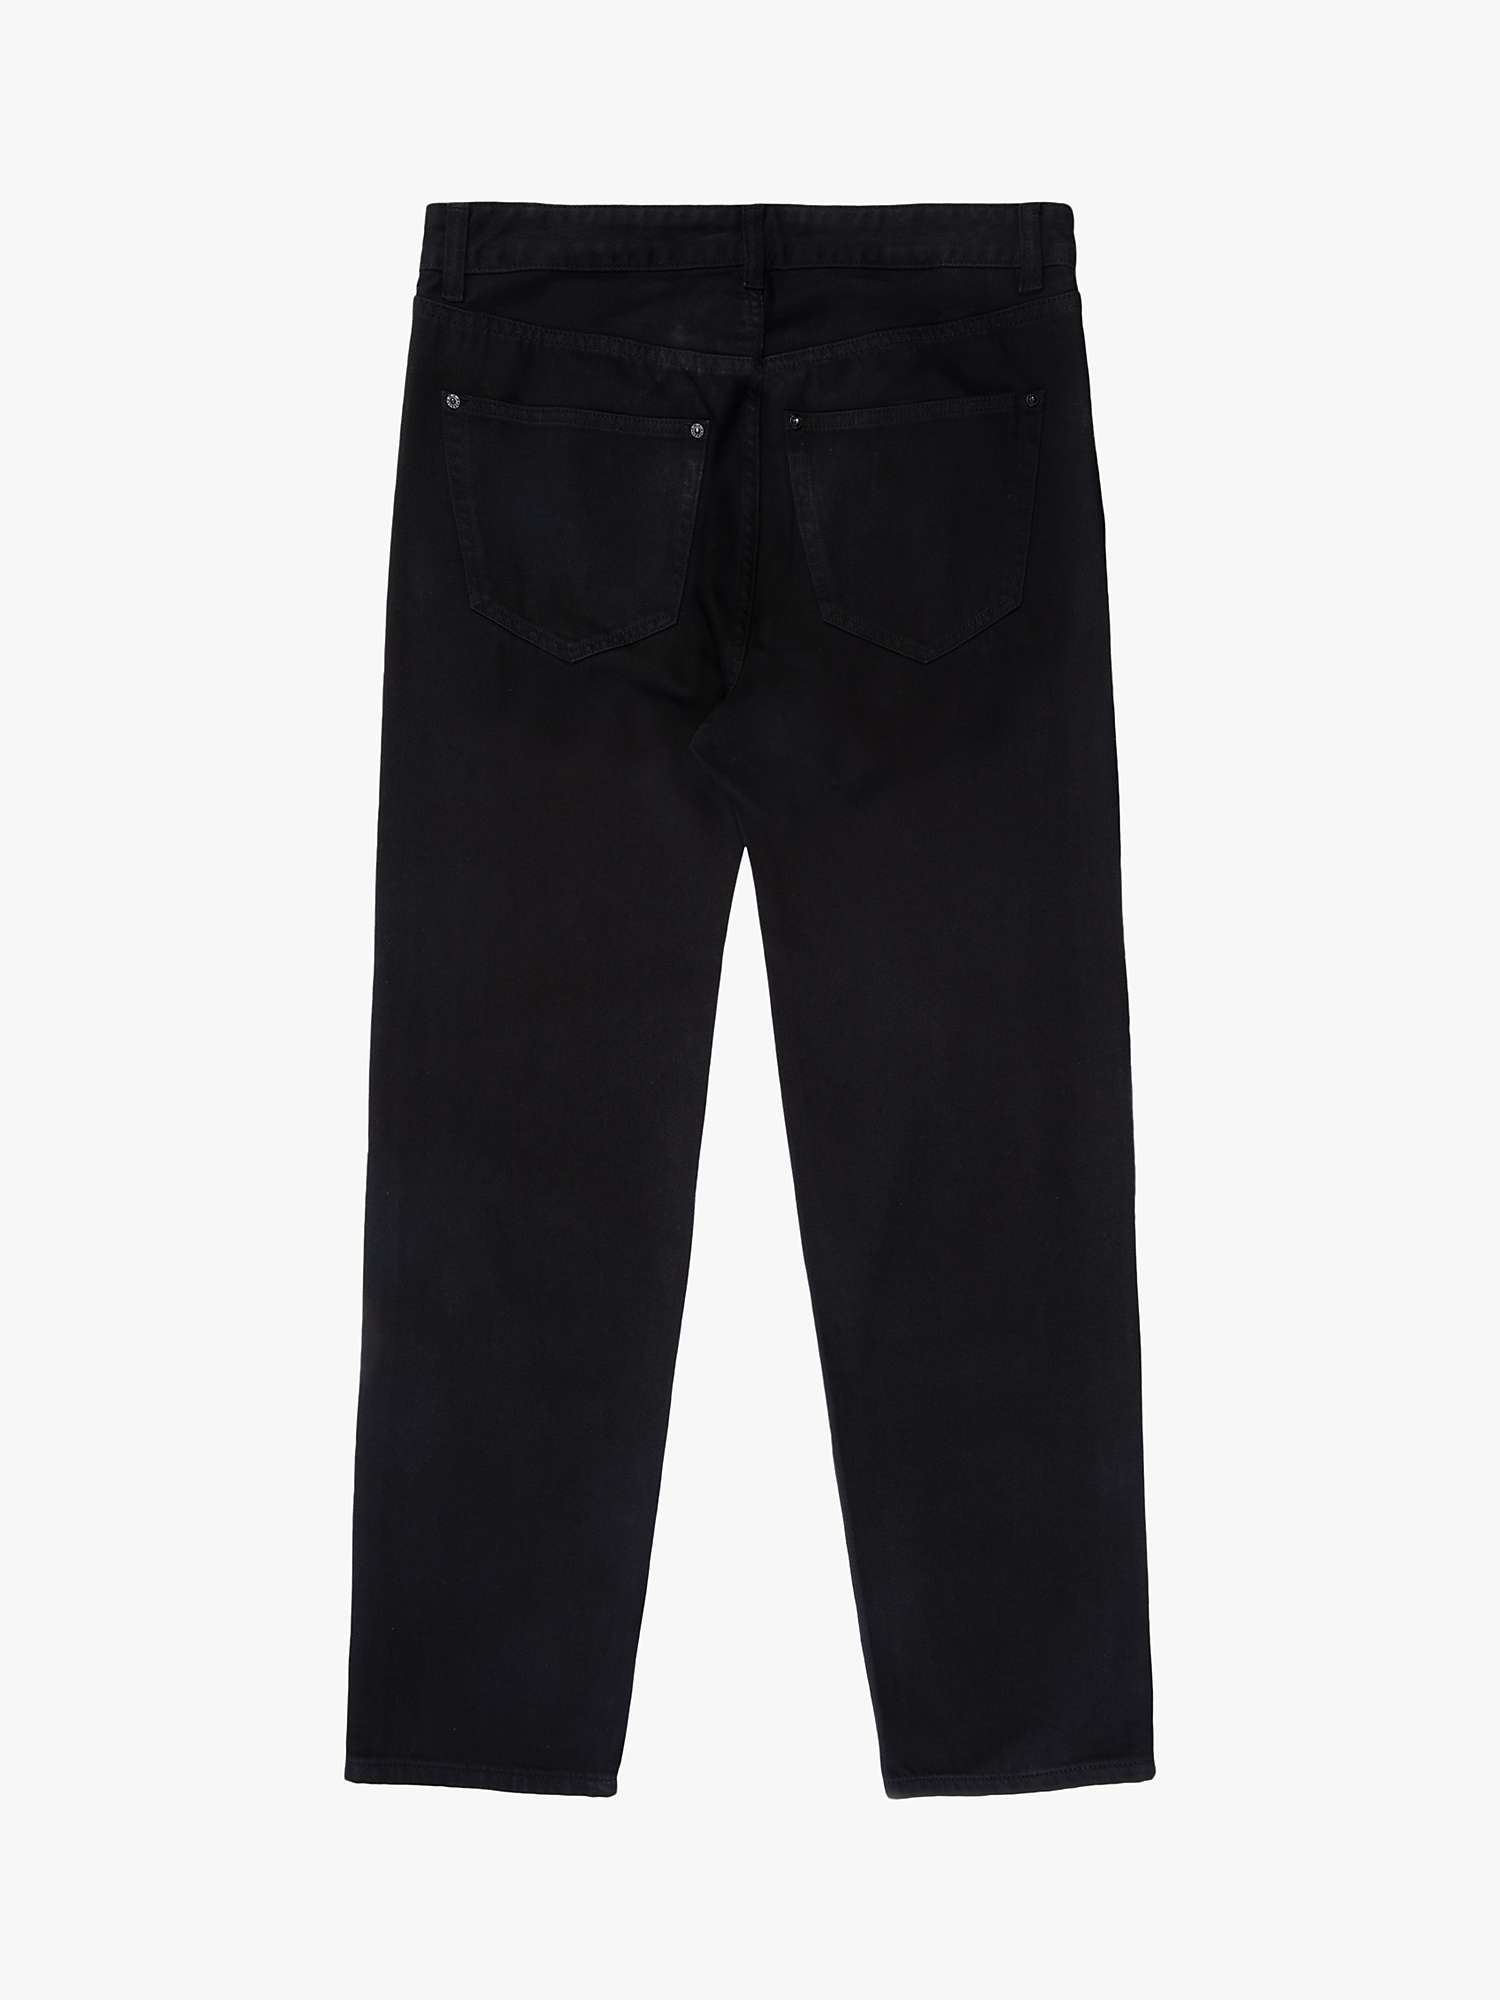 Buy M.C.Overalls 5 Pocket Regular Fit Denim Jeans Online at johnlewis.com